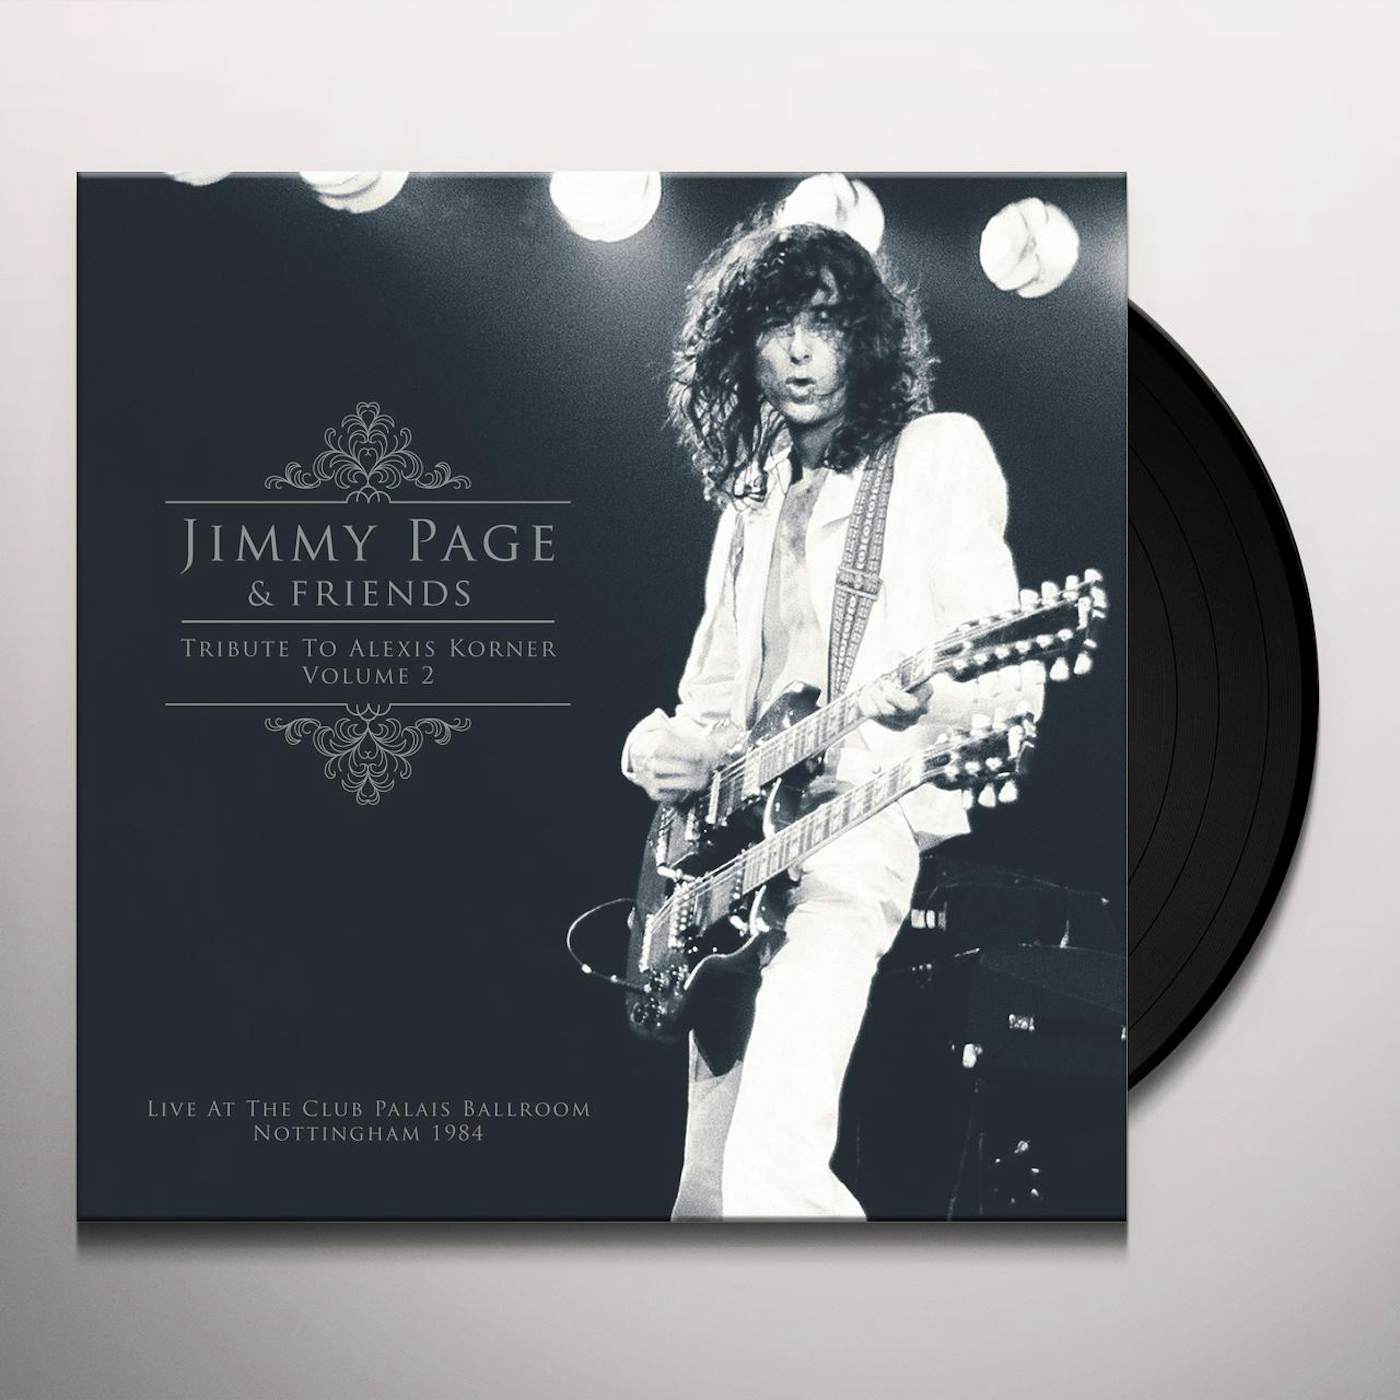 Sound Tracks: Vinyl Box Set - Jimmy Page